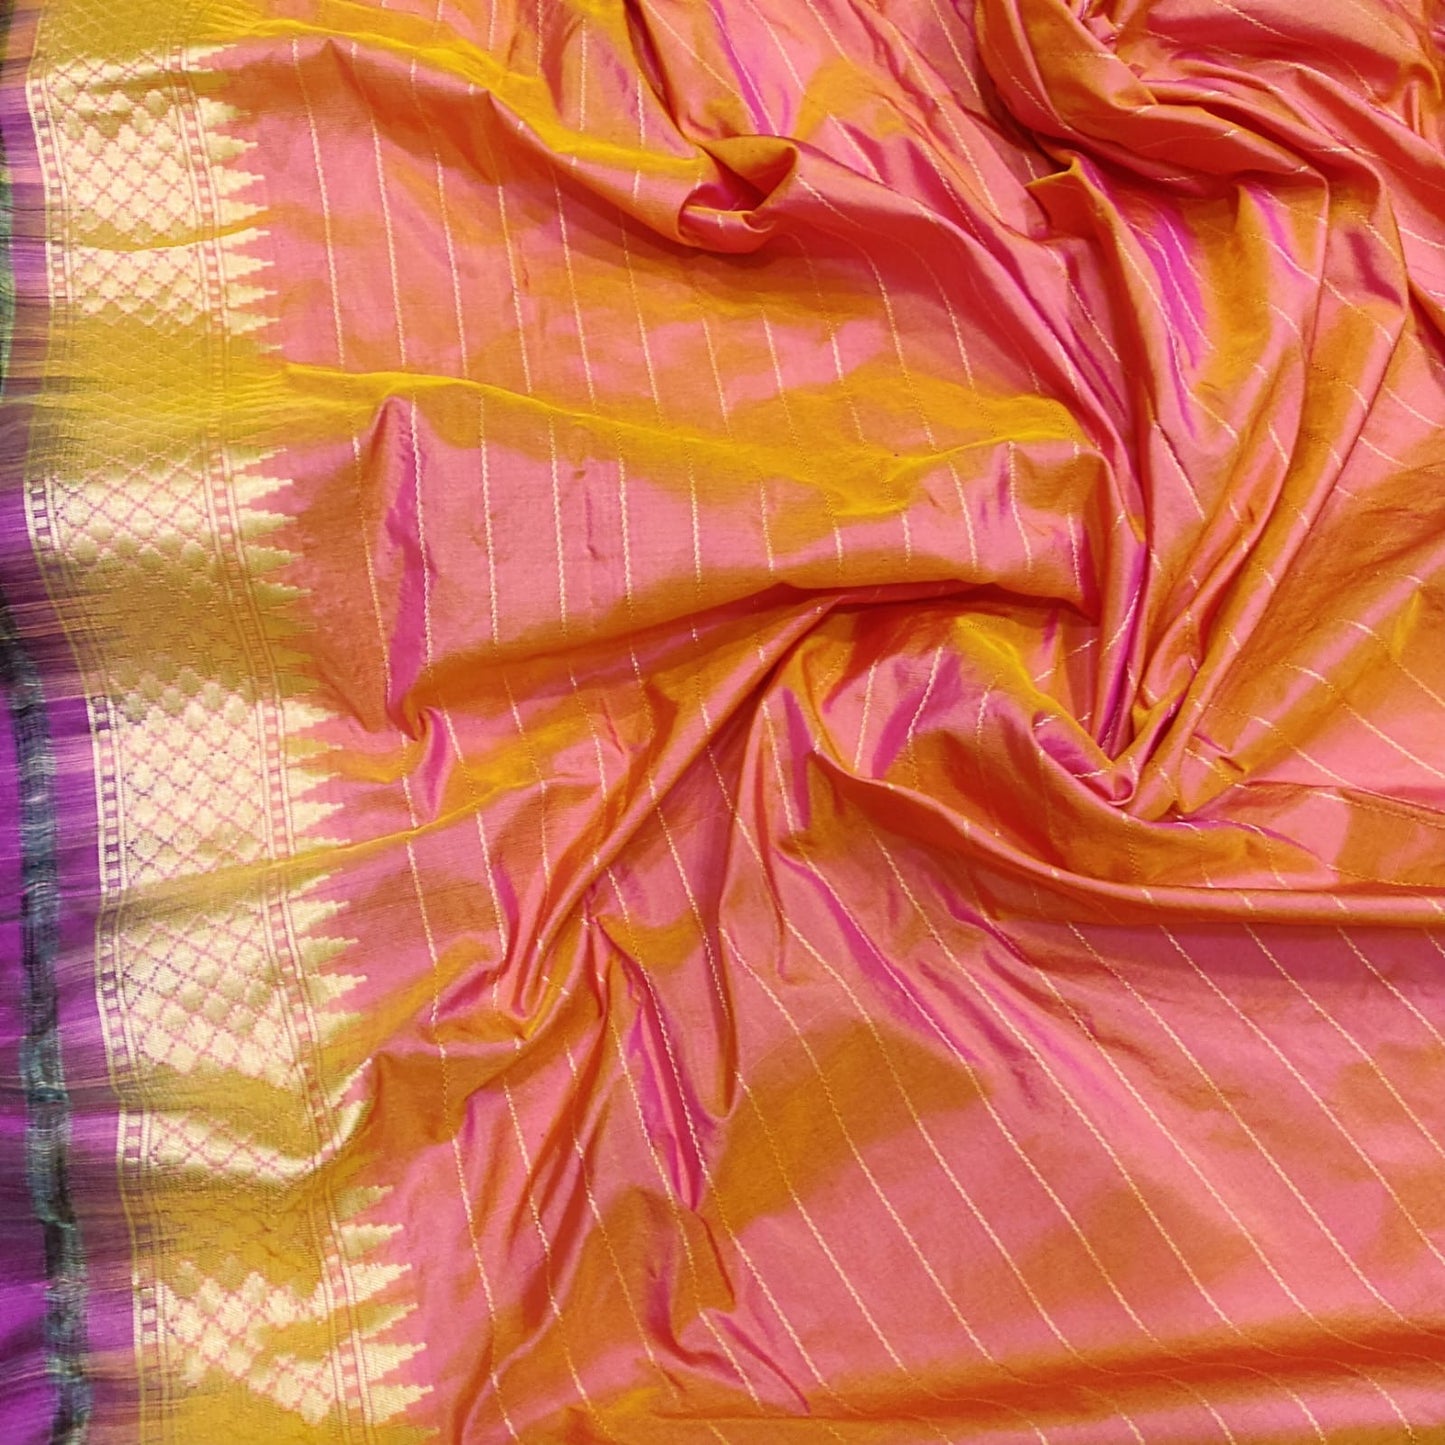 Exclusive Pink Katan Handwoven Zari Sarees Women Sari